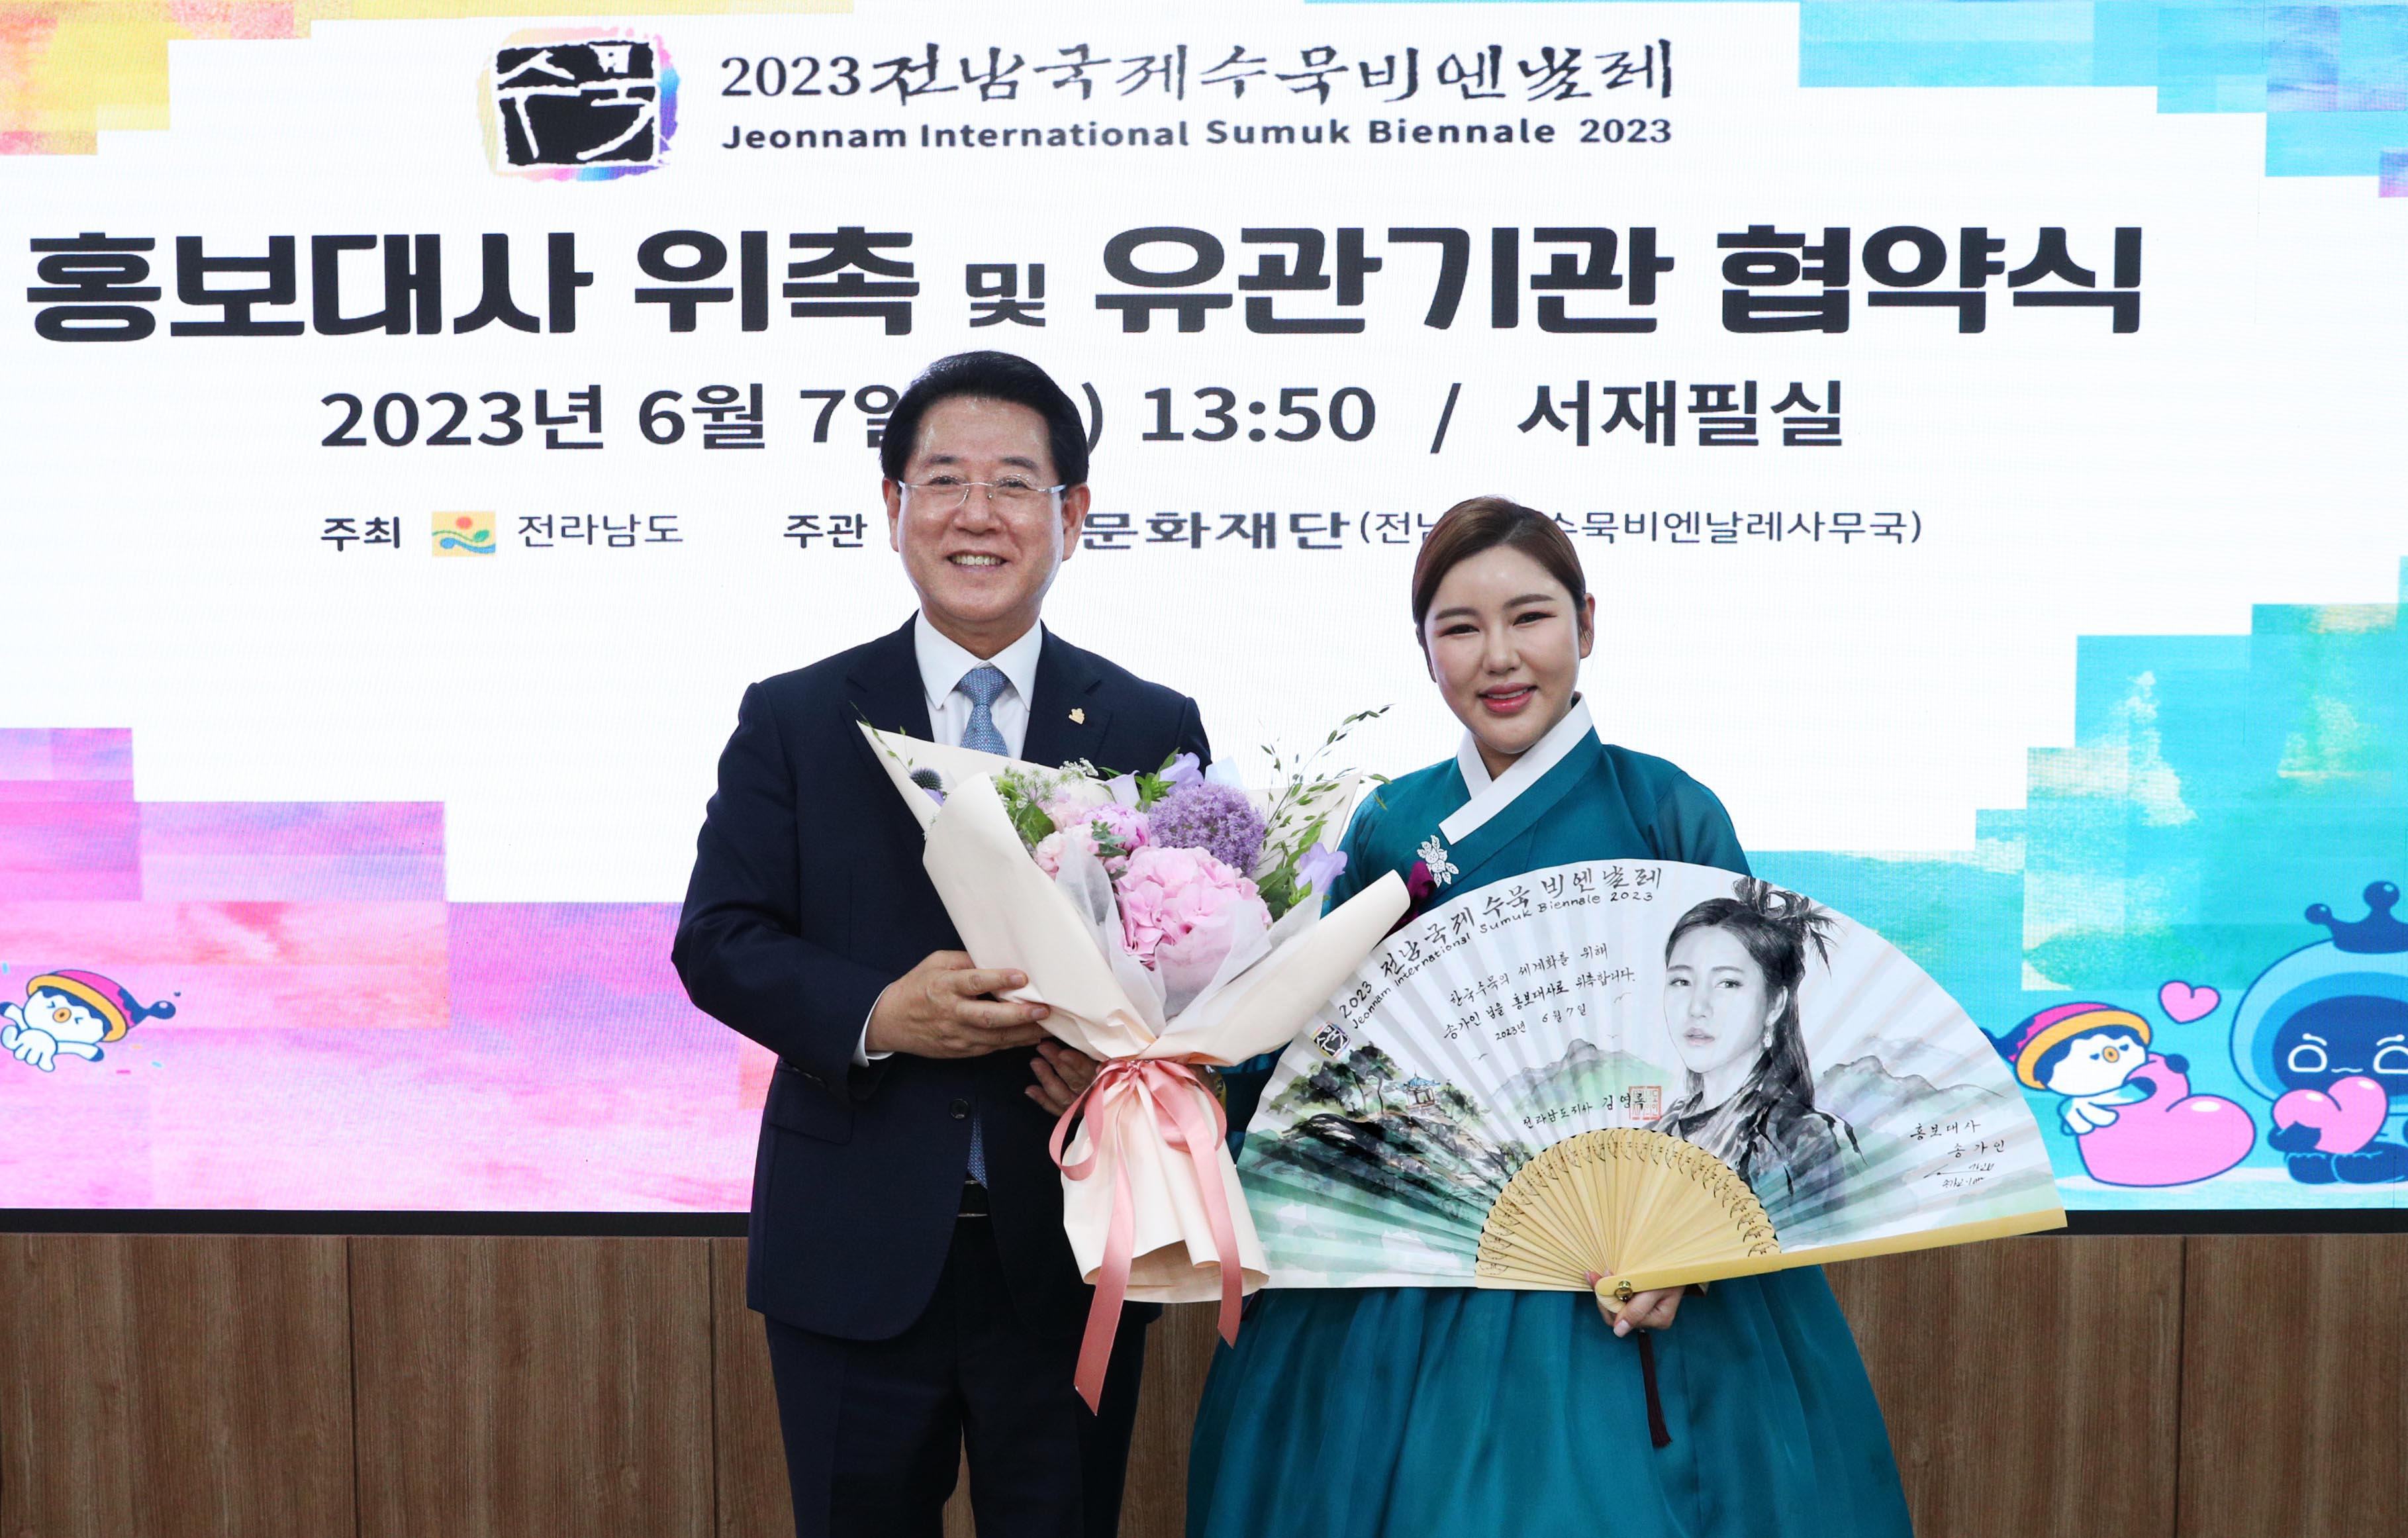 2023 전남국제수묵비엔날레 홍보대사 위촉 및 유관기관 협약식2